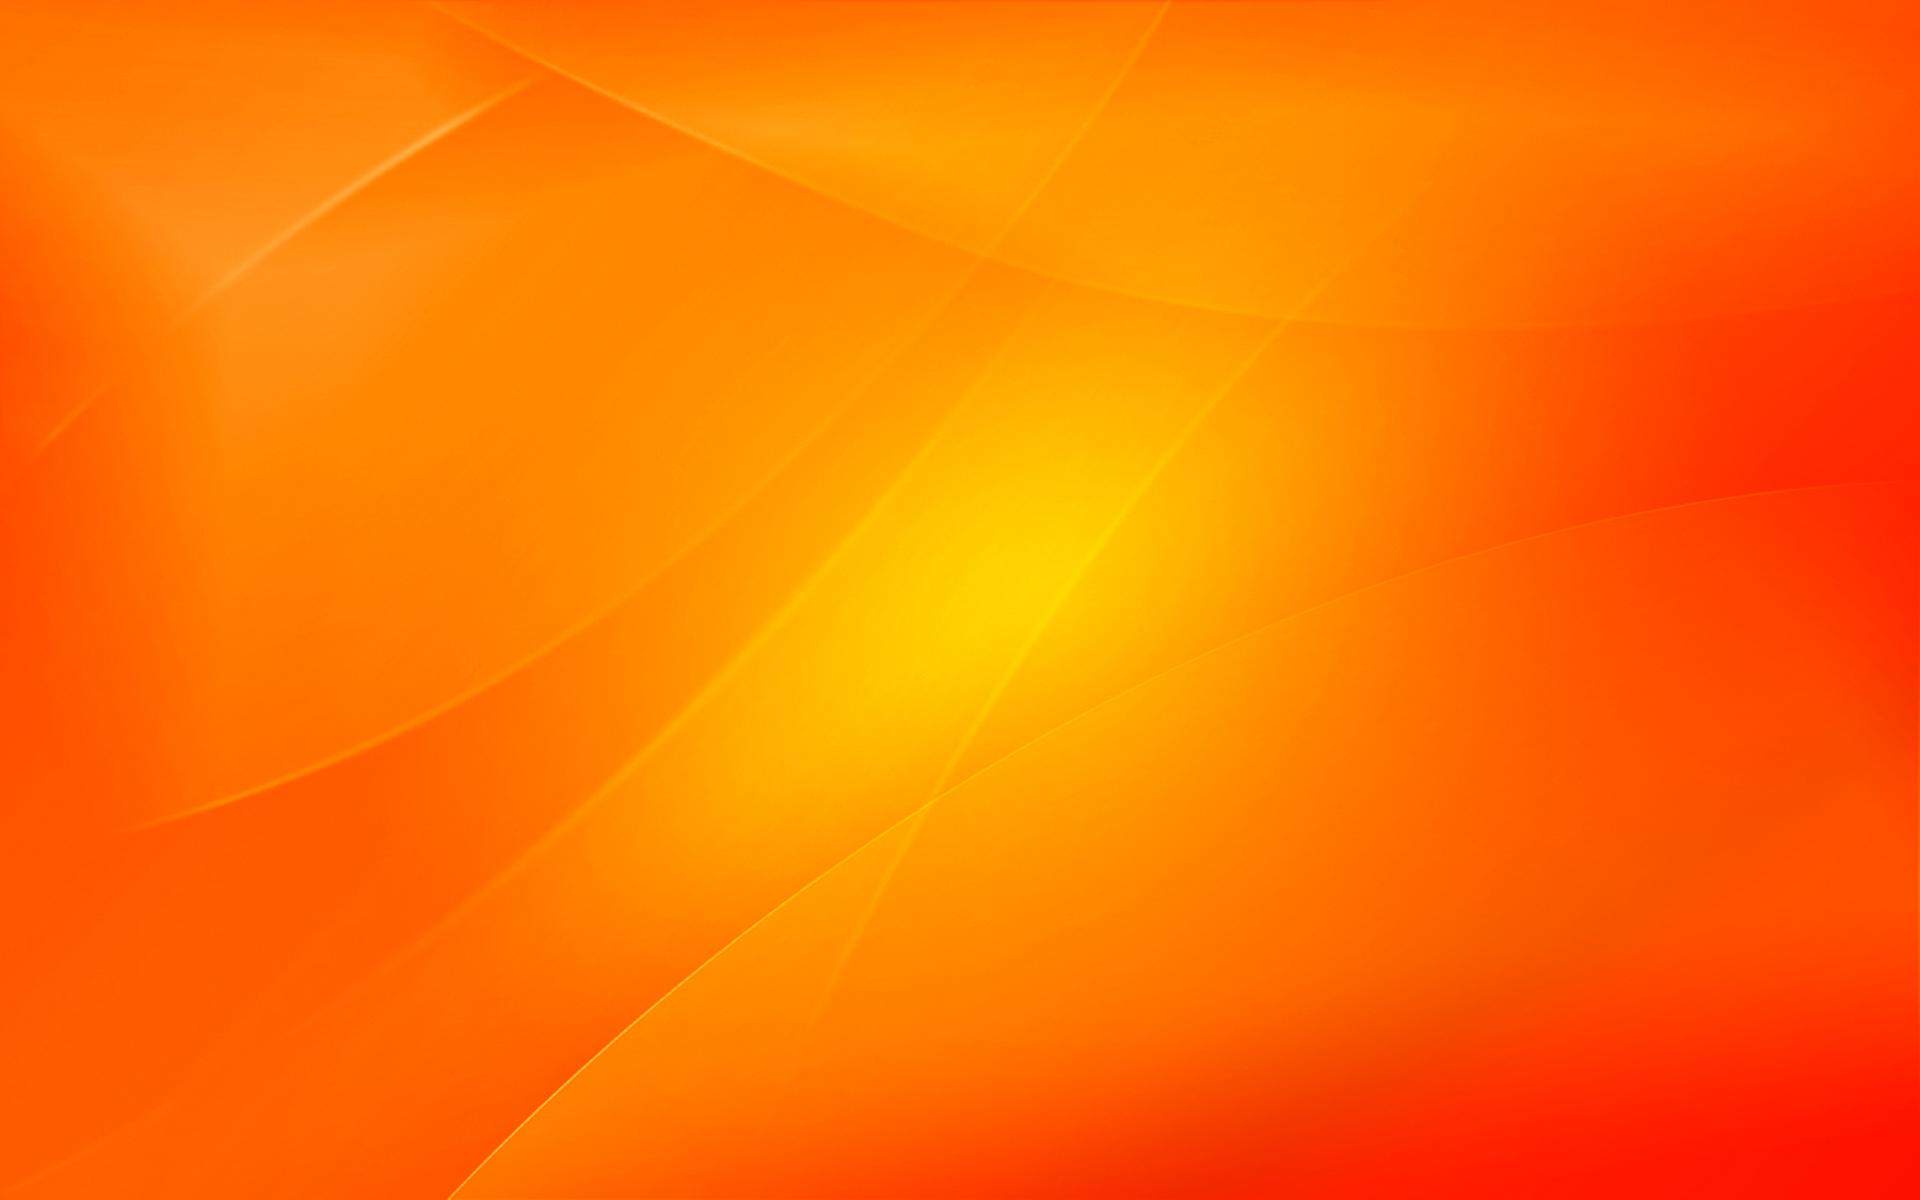 Tải miễn phí hình nền cam 1920x1200 để làm nền cho máy tính của bạn! Với độ phân giải cao, màu cam tươi sáng và hình ảnh đầy sức sống, bức tranh này sẽ làm bừng sáng không gian làm việc của bạn. 